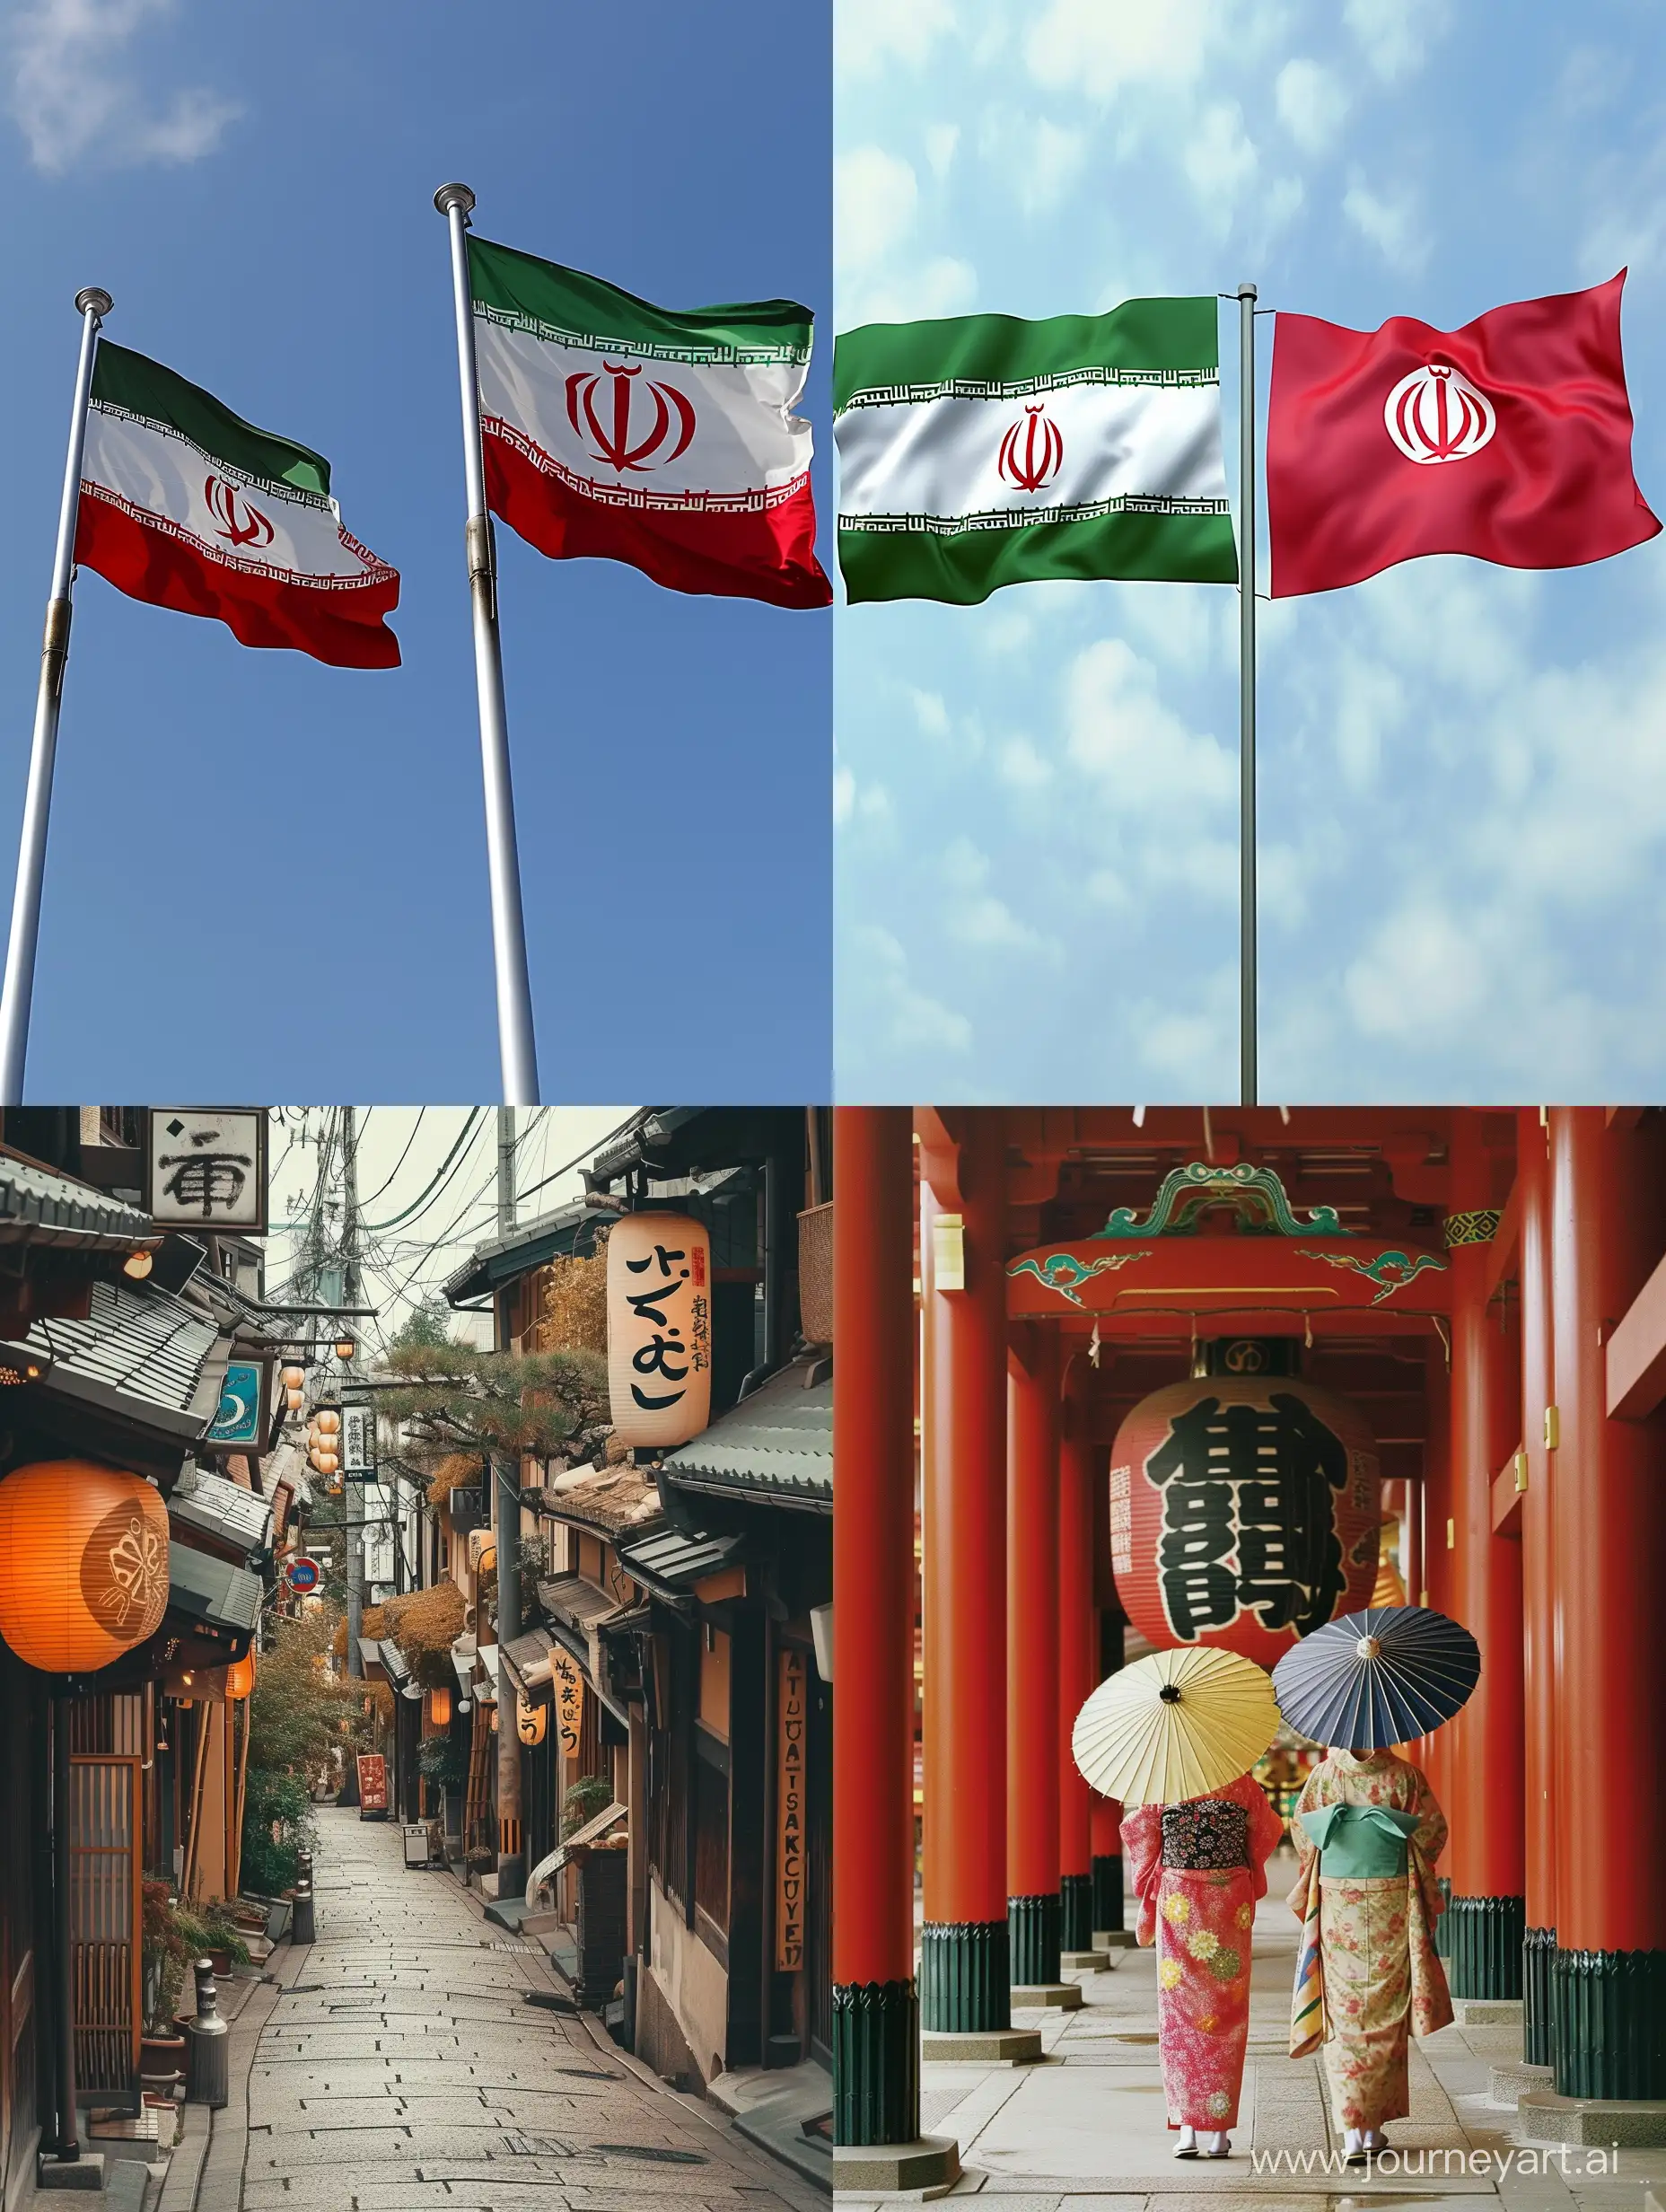 Iran and Japan